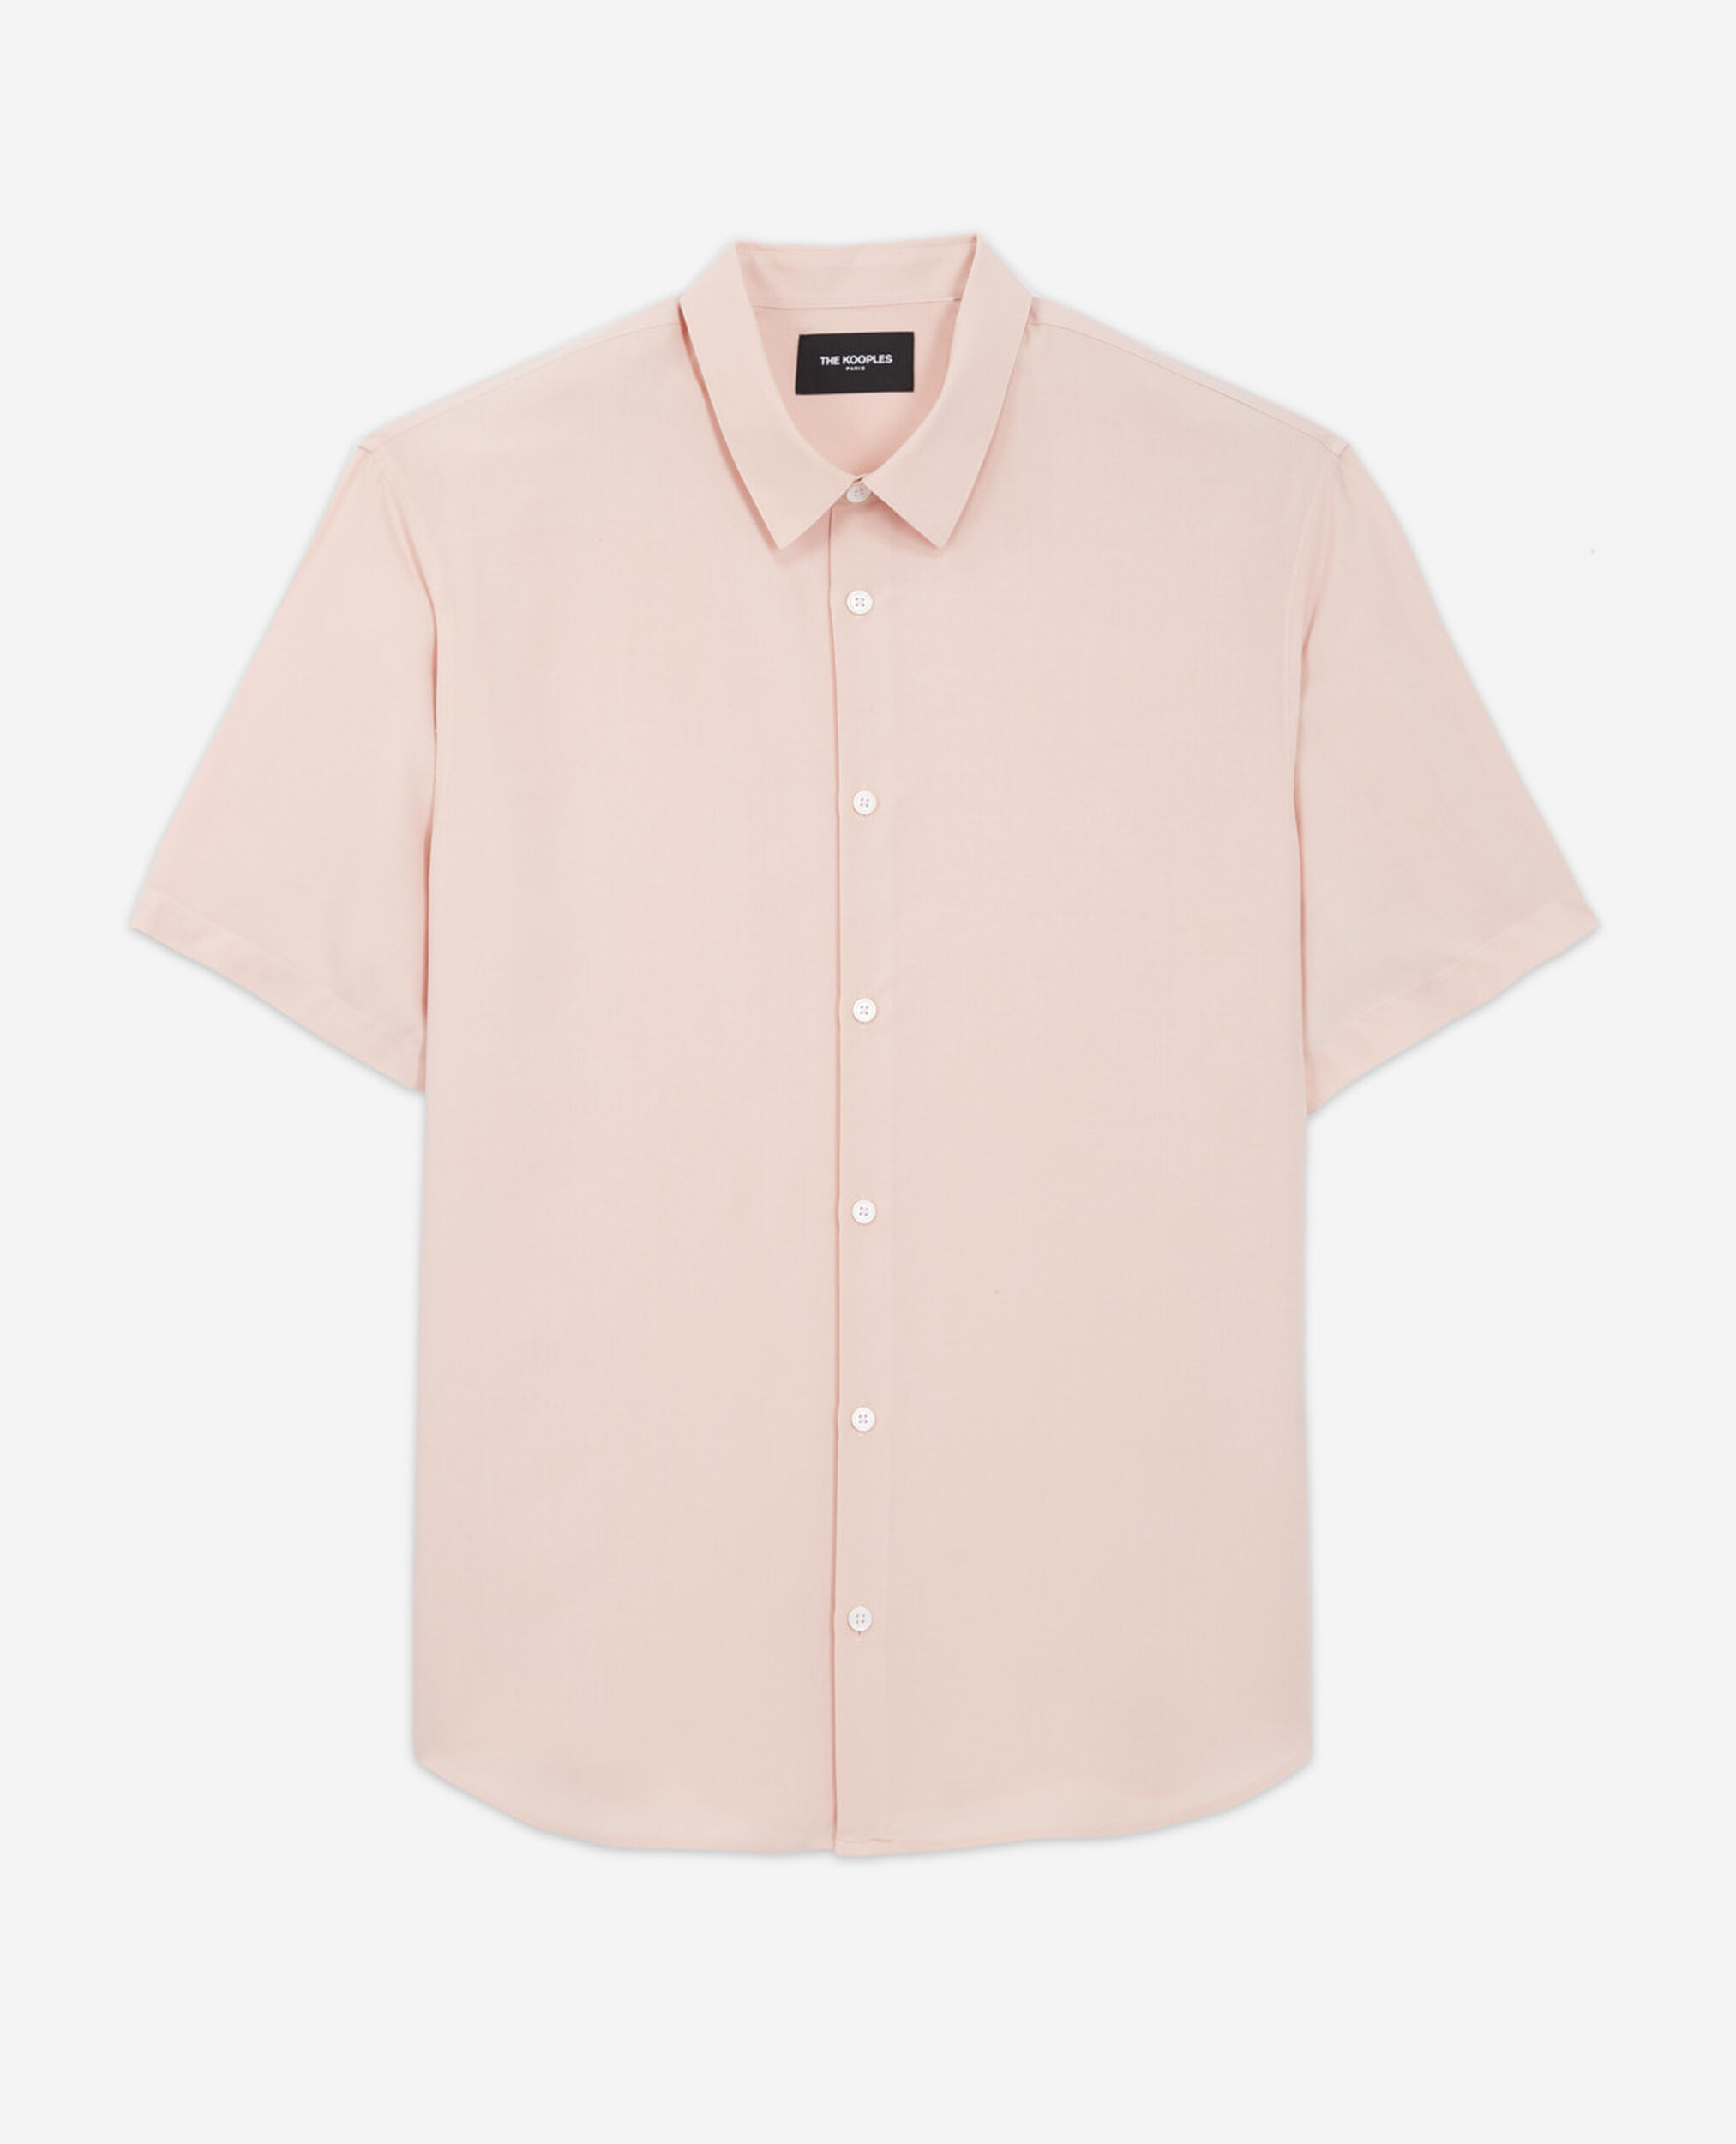 Camisa amplia rosa manga corta, PINK, hi-res image number null